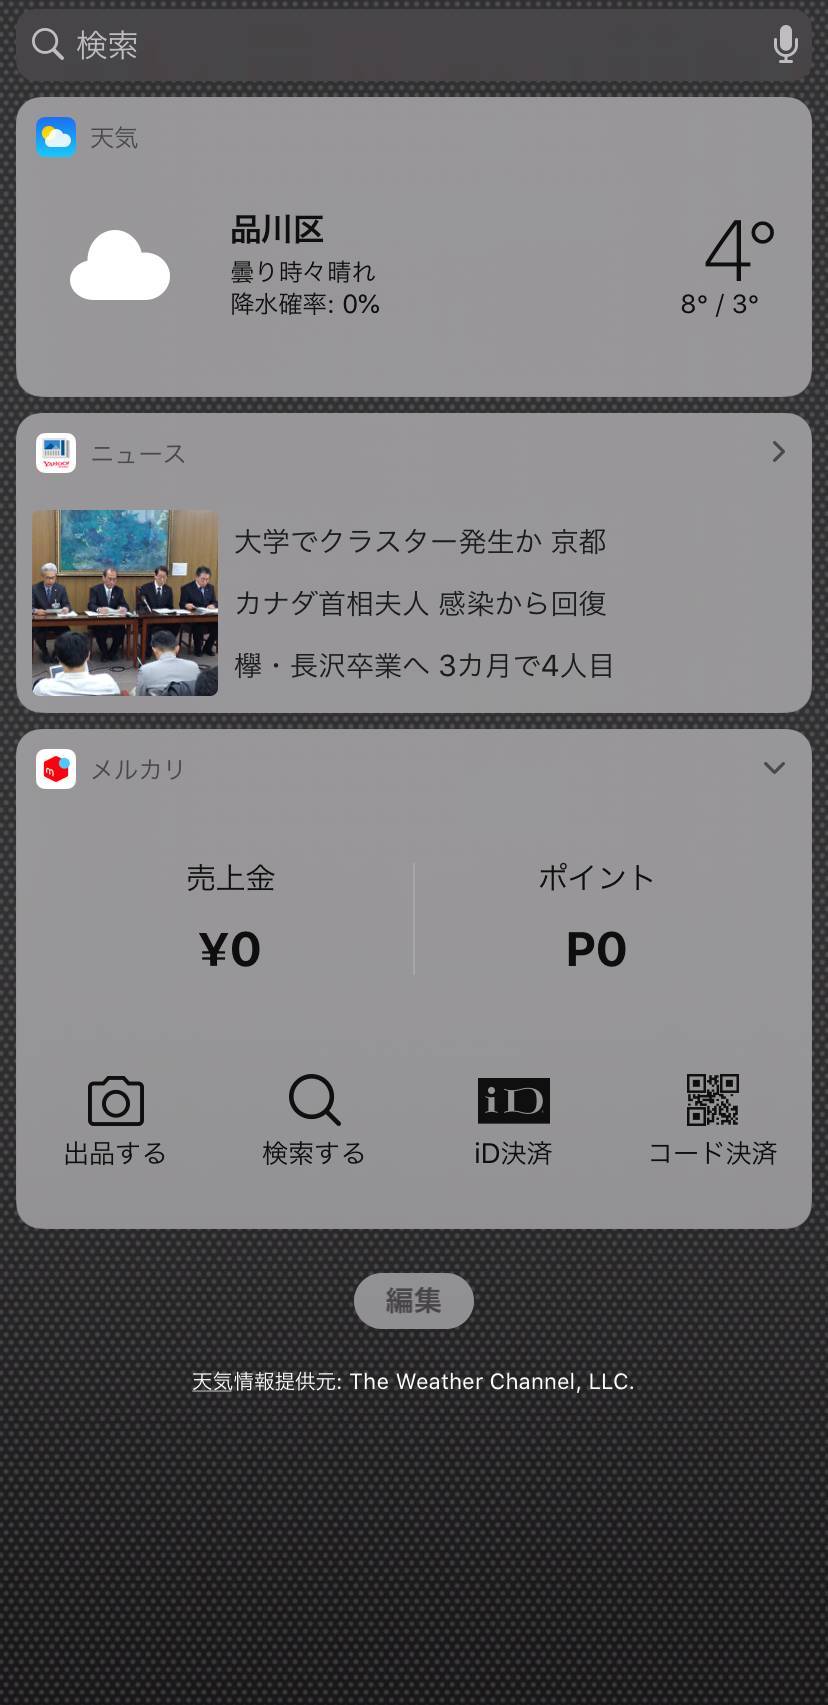 Iphoneのウィジェットの使い方 設定方法とおすすめアプリ13選の画像 1枚目 Appliv Topics